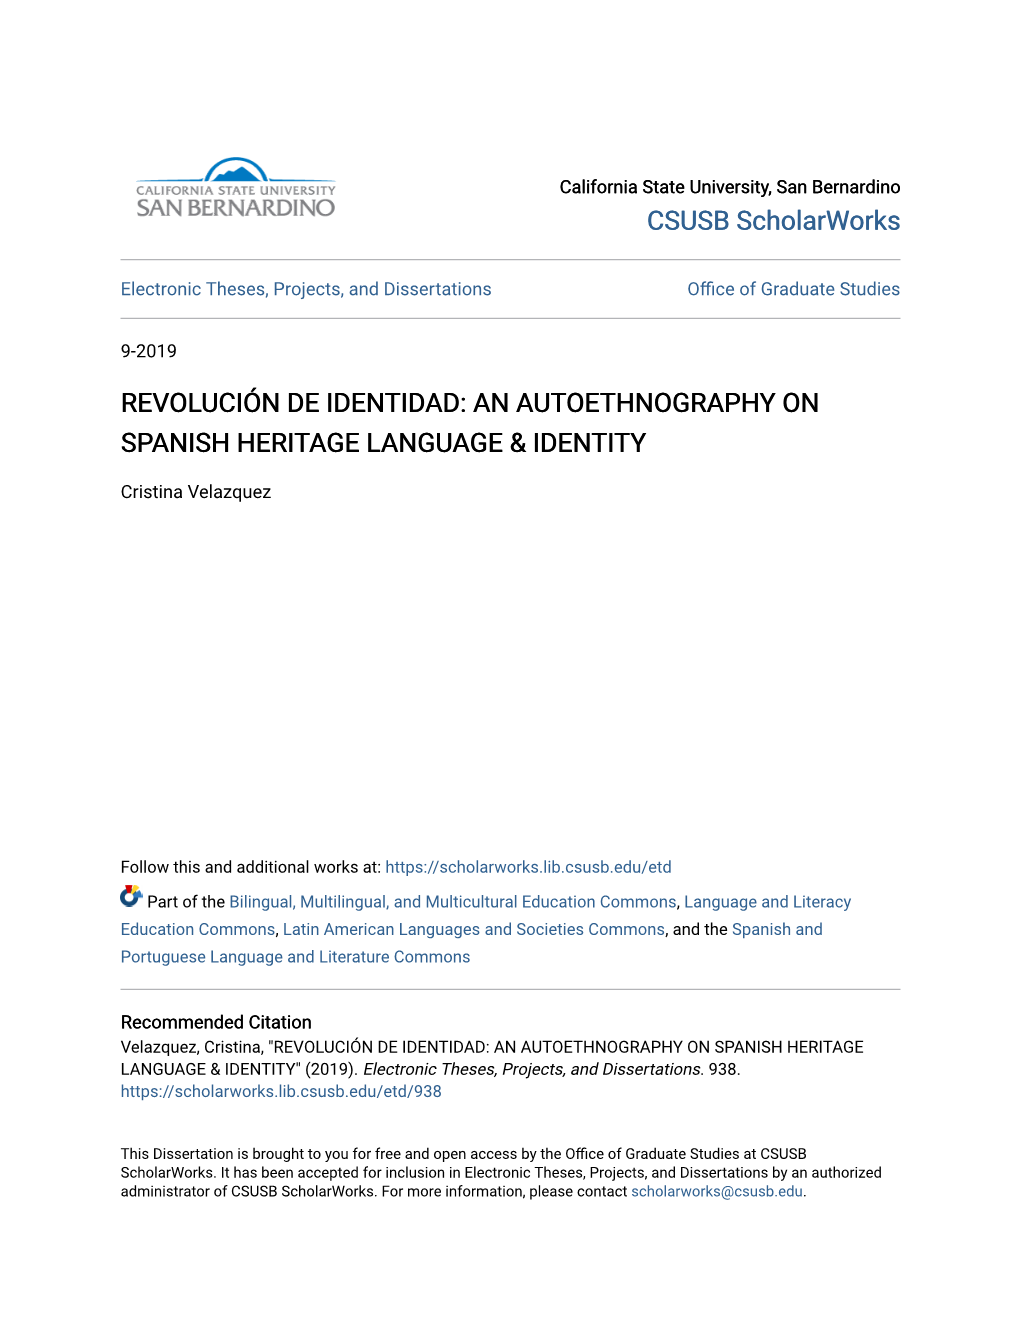 An Autoethnography on Spanish Heritage Language & Identity